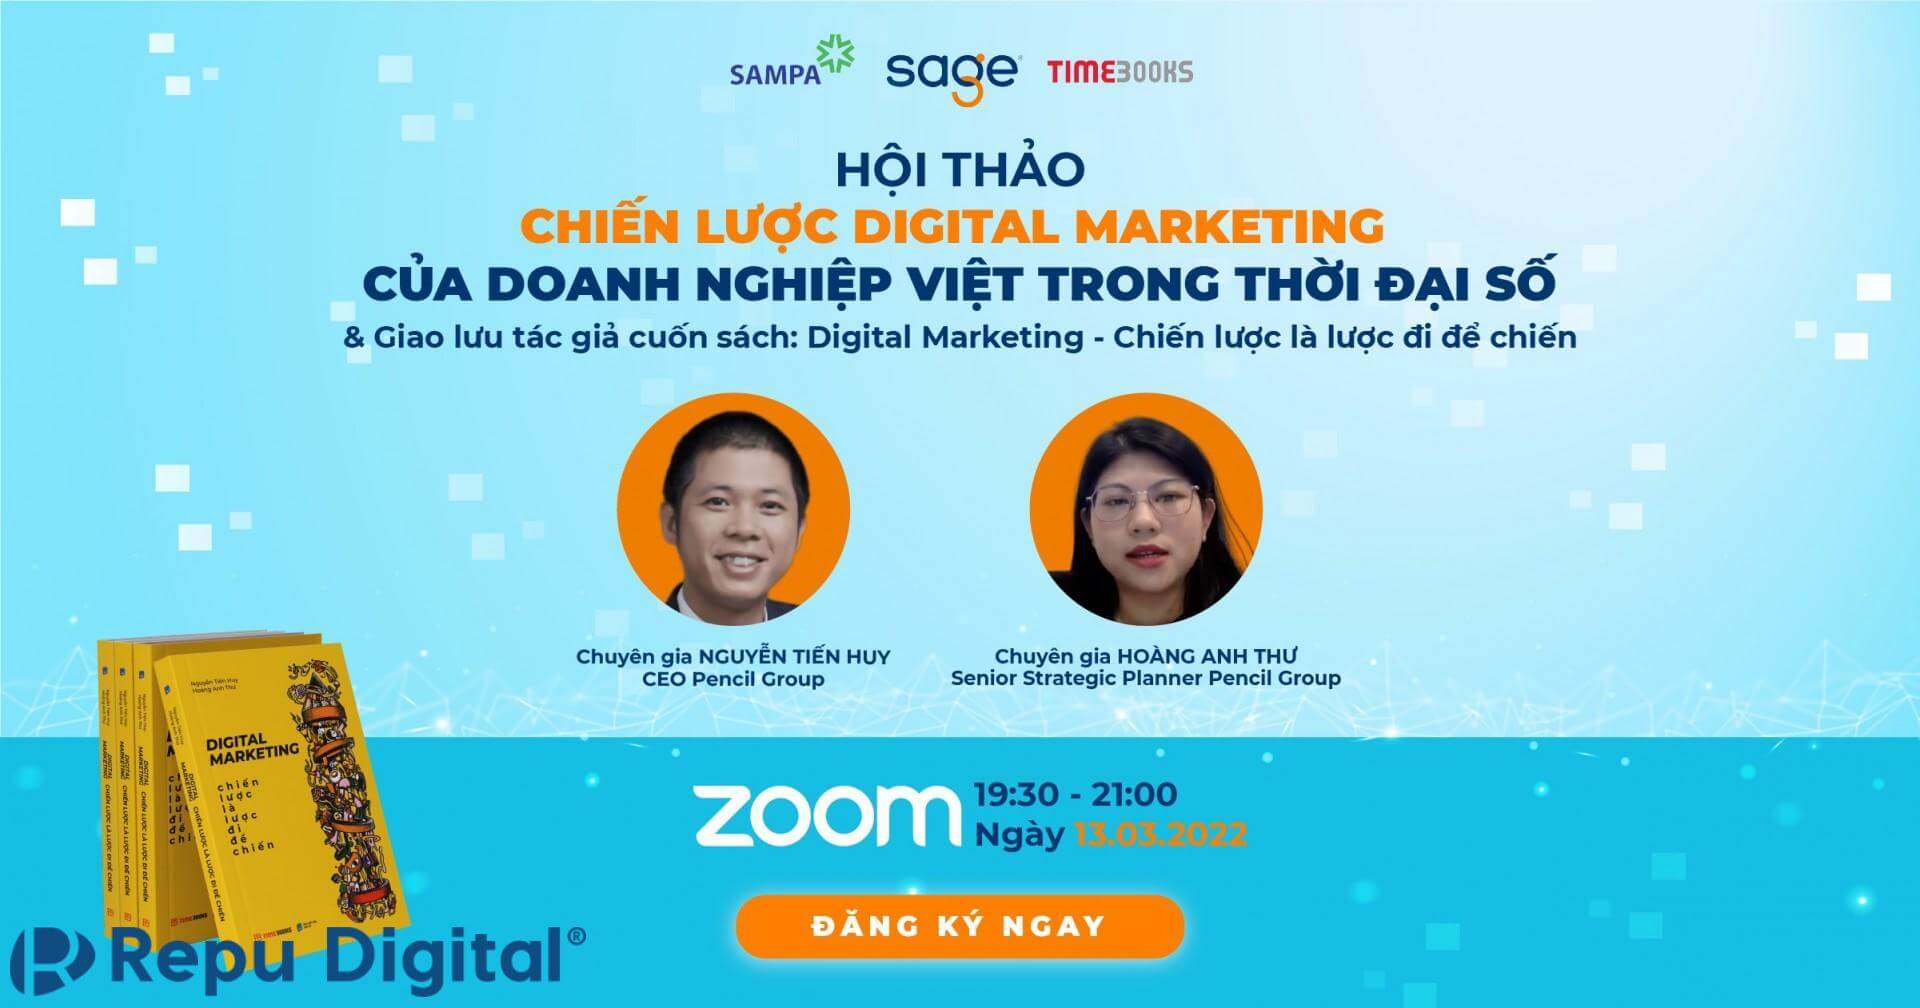 Pencil Group, học viện Sage và TimeBook lựa chọn Zoom tổ chức lễ ra mắt sách Chiến lược Digital Marketing